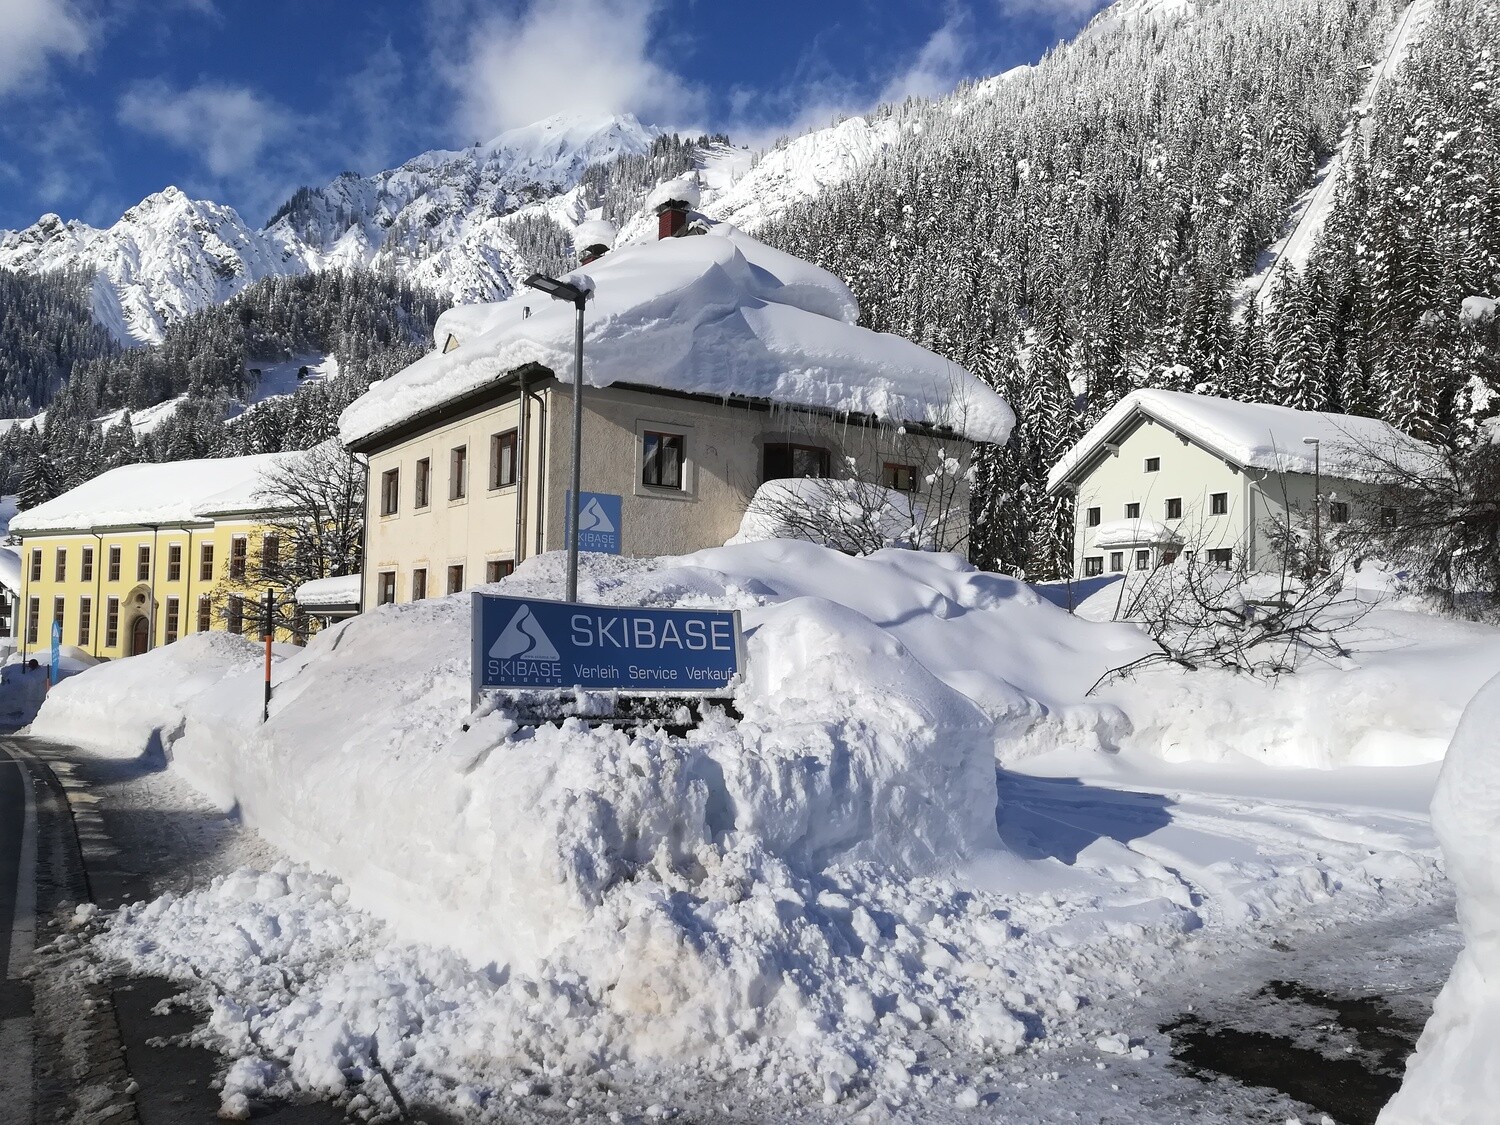 Skibase Ferienwohnung Wald/Arlberg 400m vom Lift, 135qm, max 12 Personen